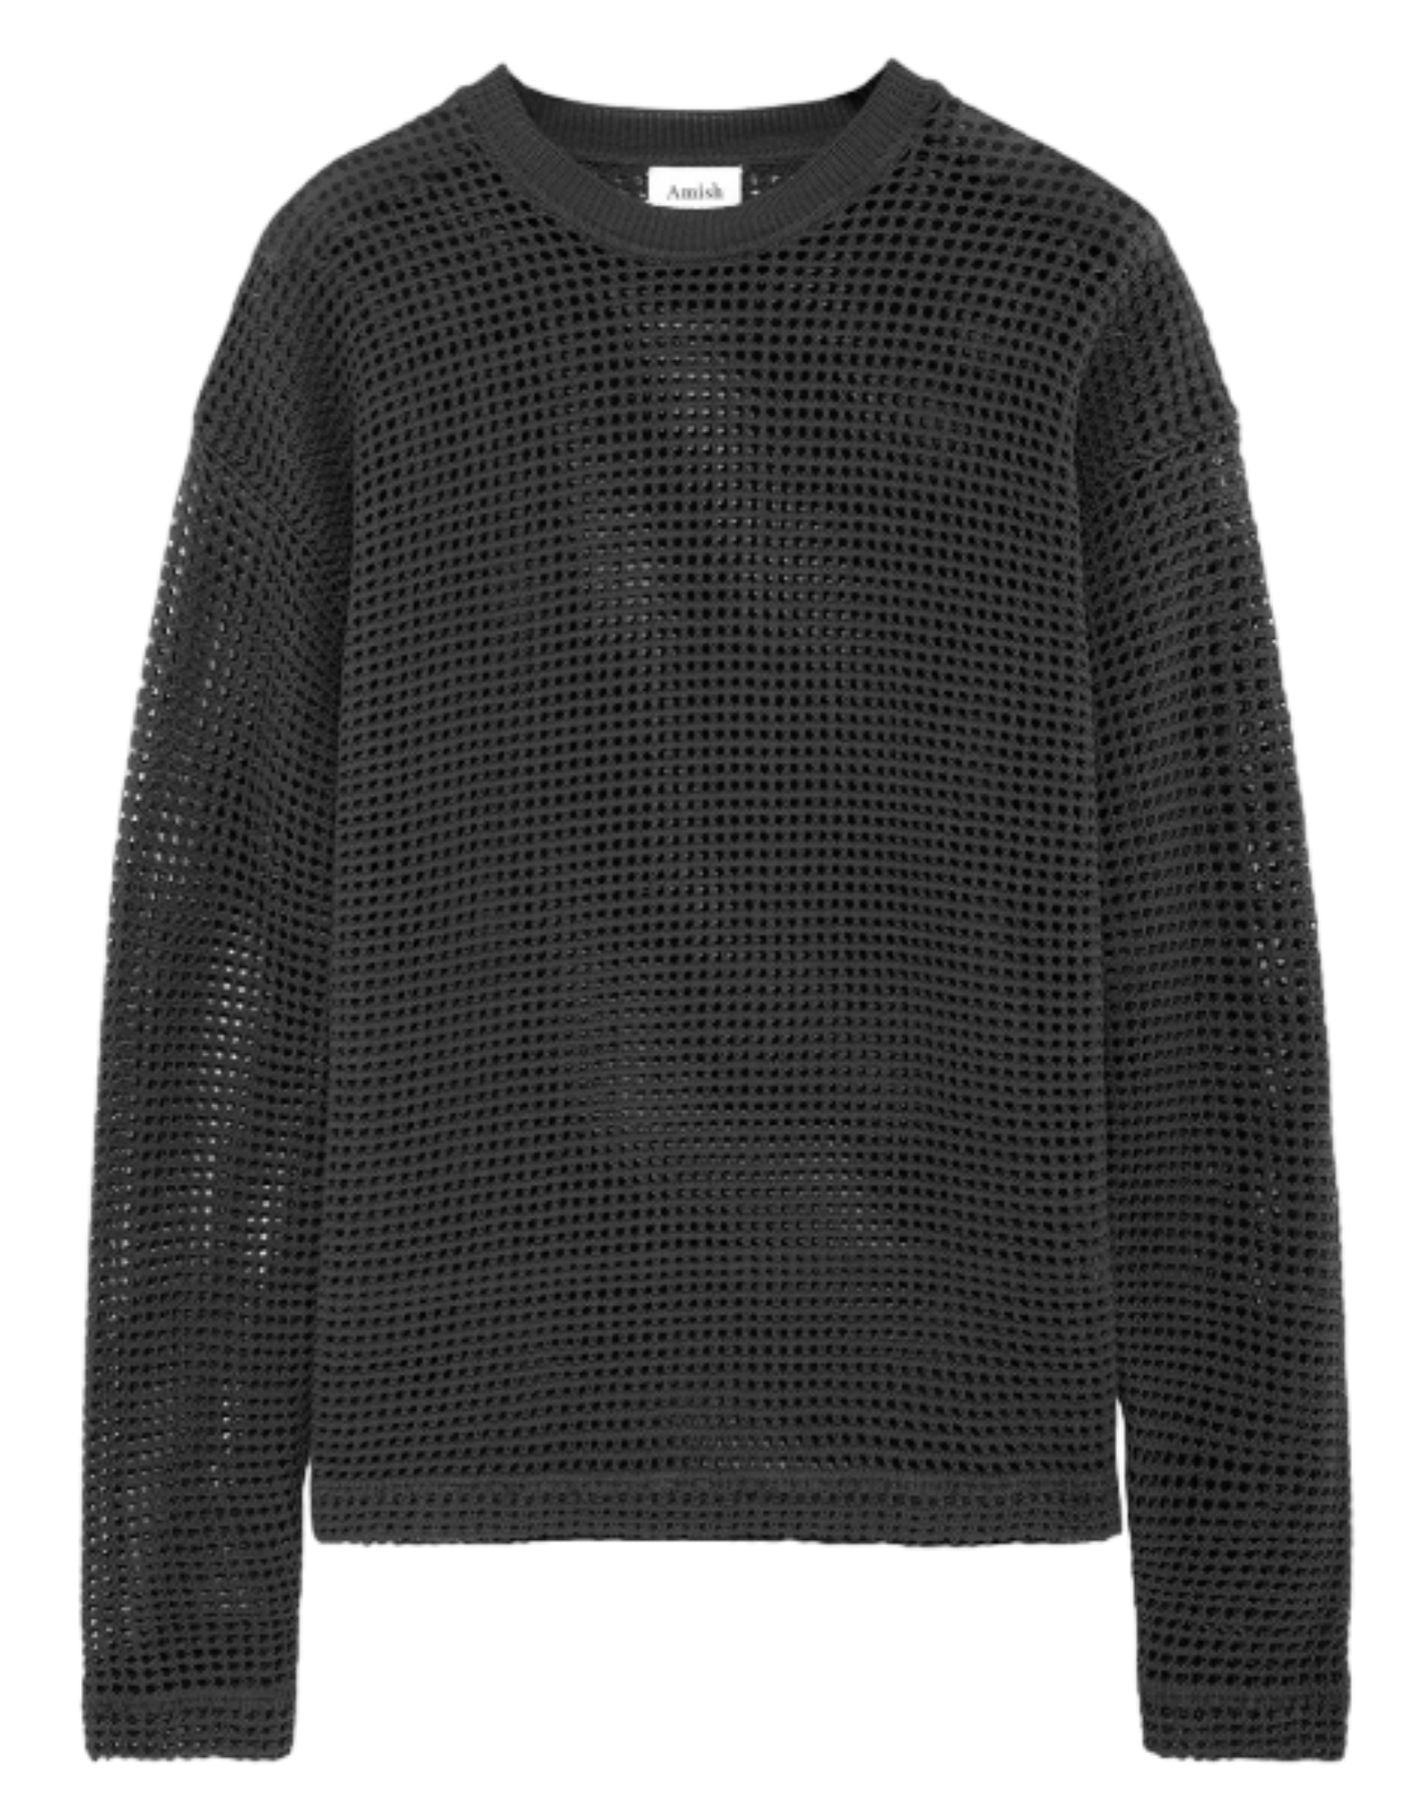 Sweater Frau AMU045CG46XXXX Schwarz Amish